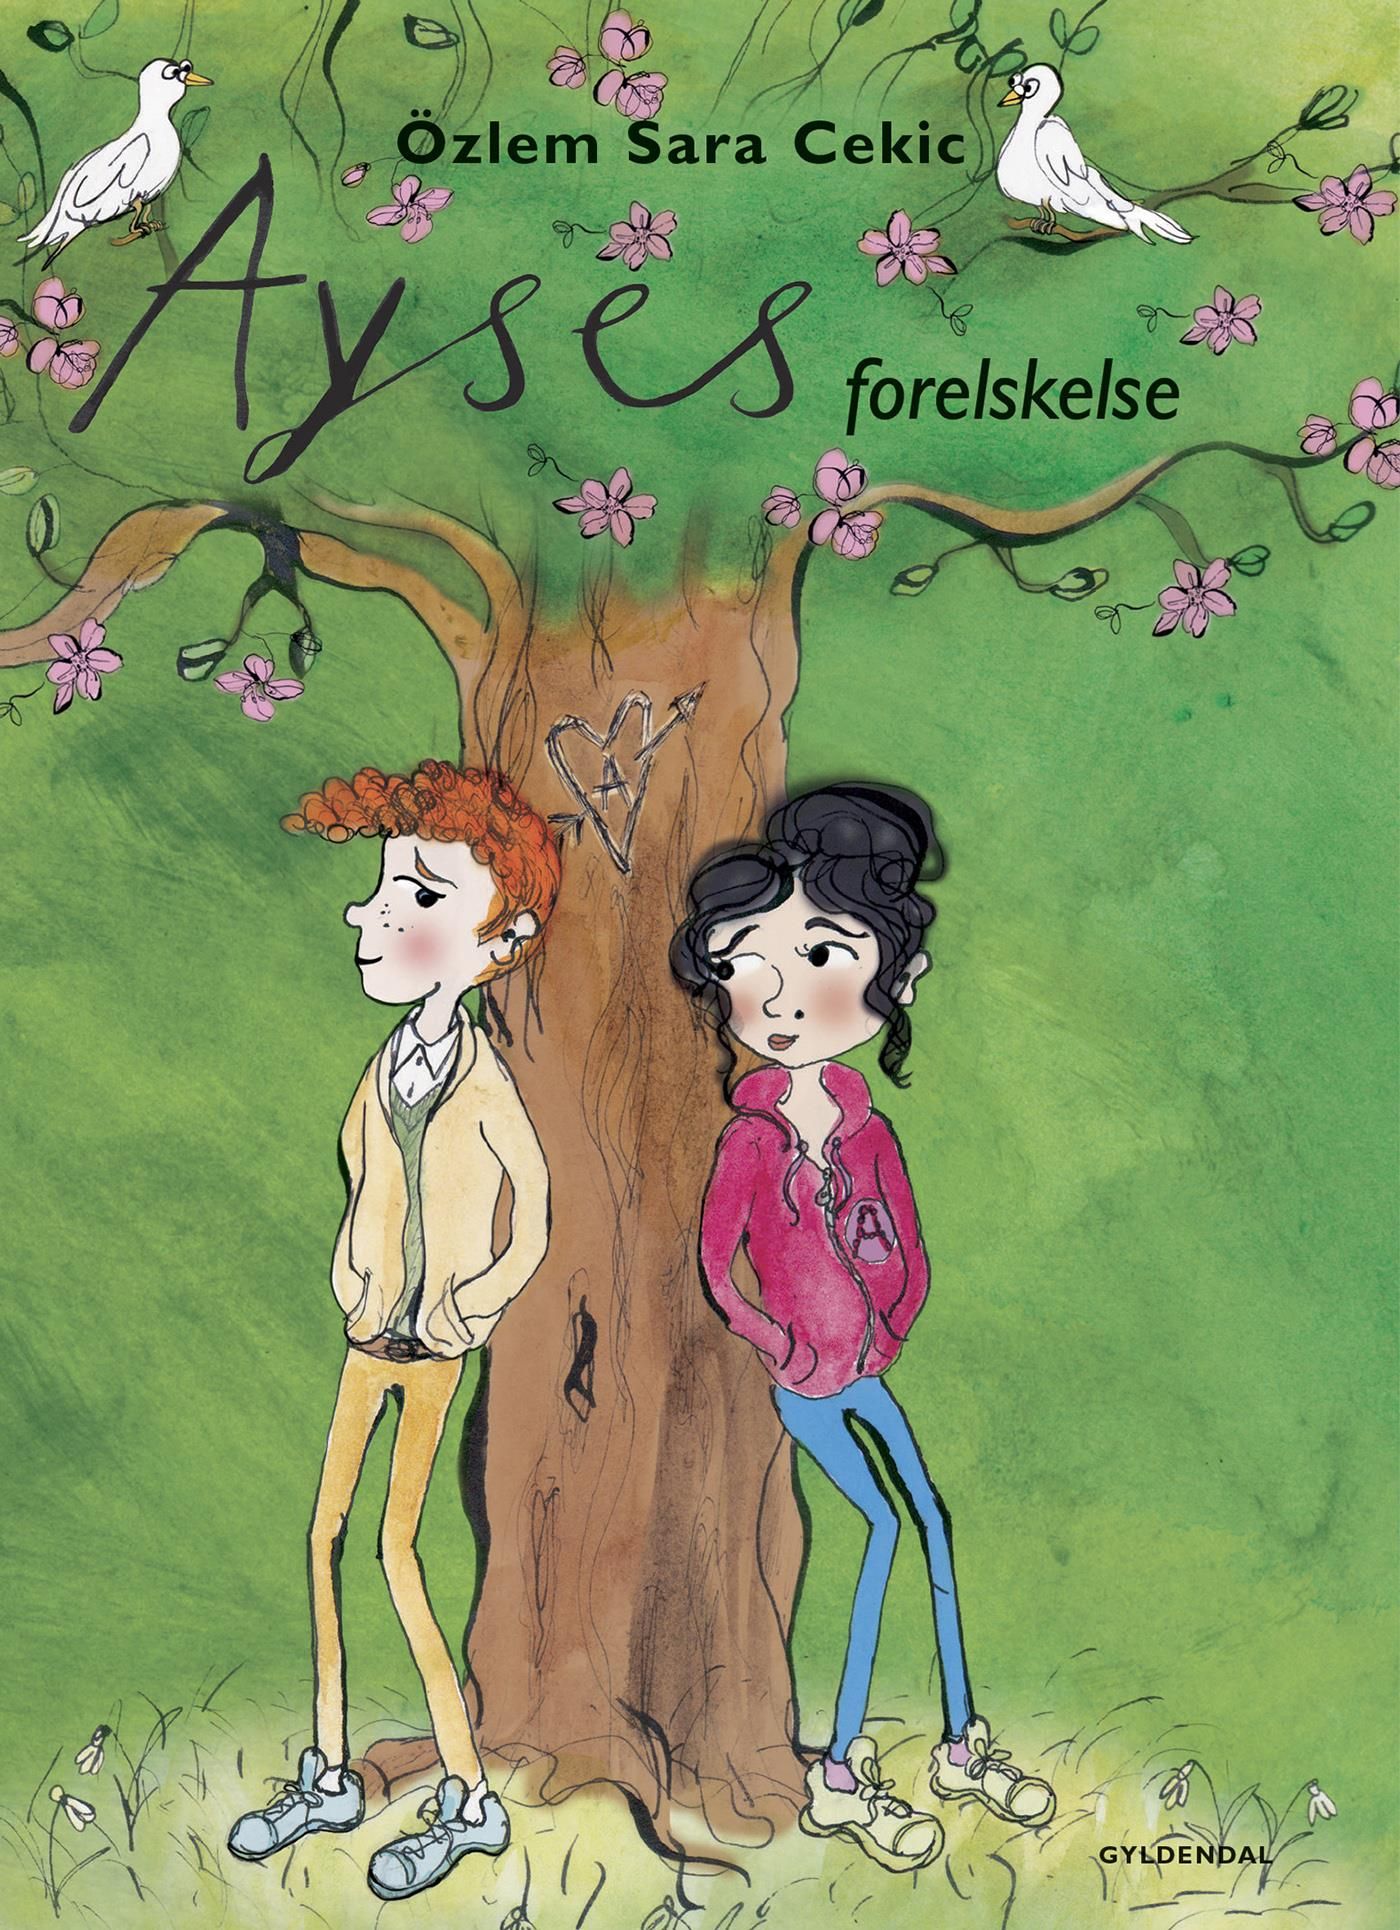 Ayses forelskelse, eBook by Özlem Cekic